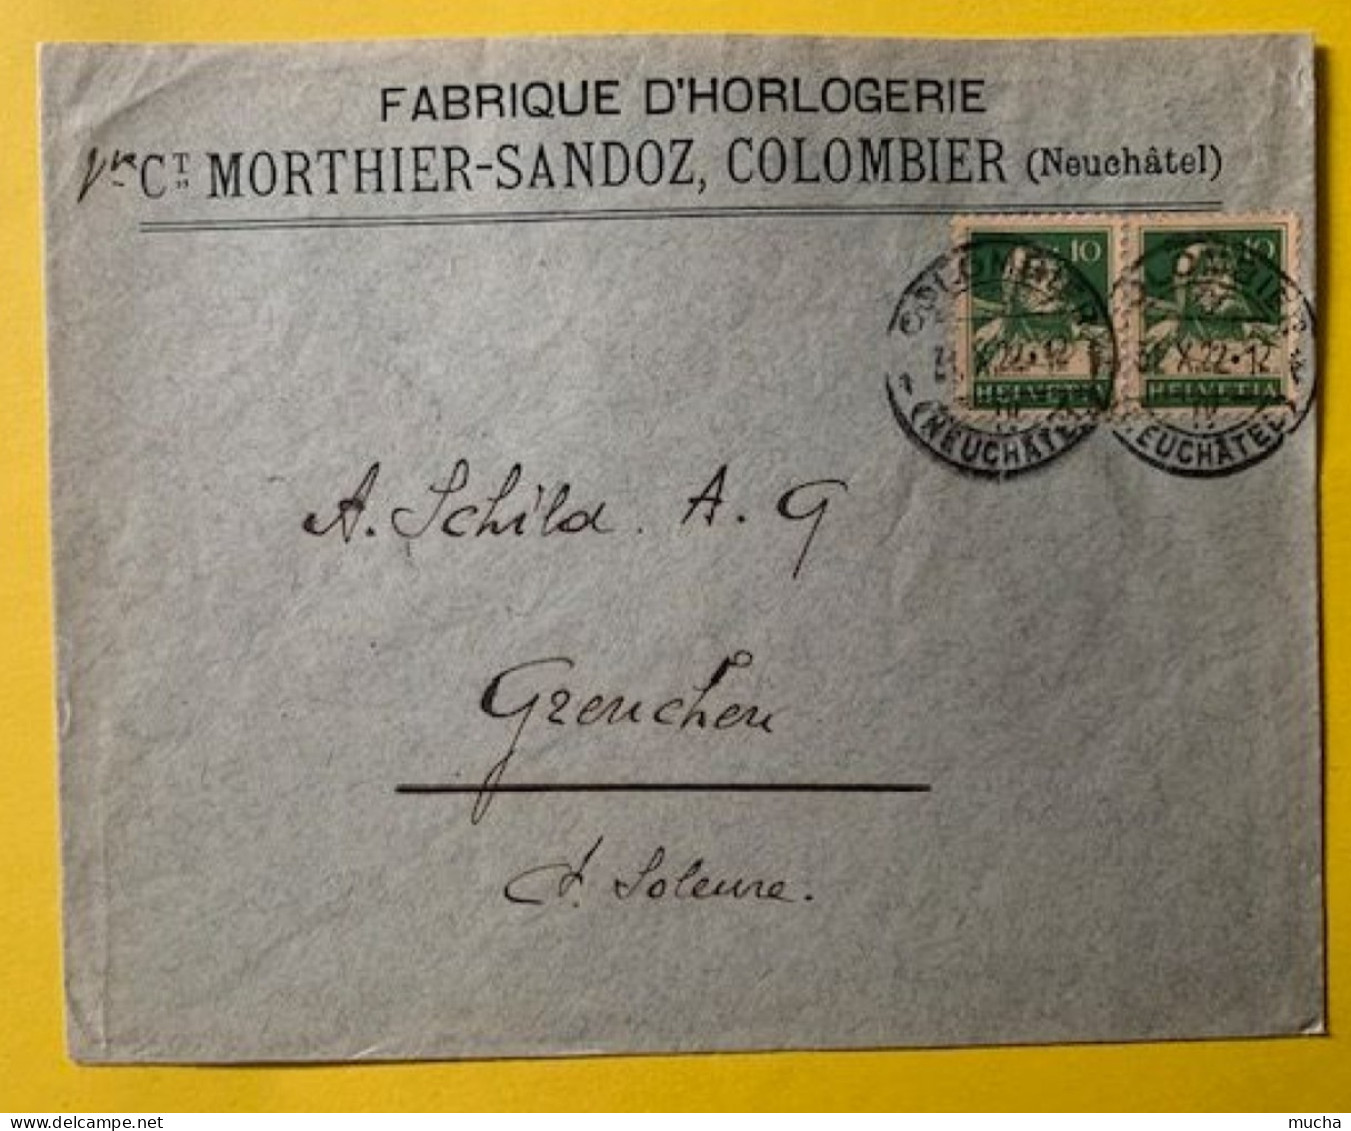 70030 - Suisse Lettre Fabrique D'Horlogerie Vve Morthier-Sandoz Colombier 31.10.1922 - Uhrmacherei